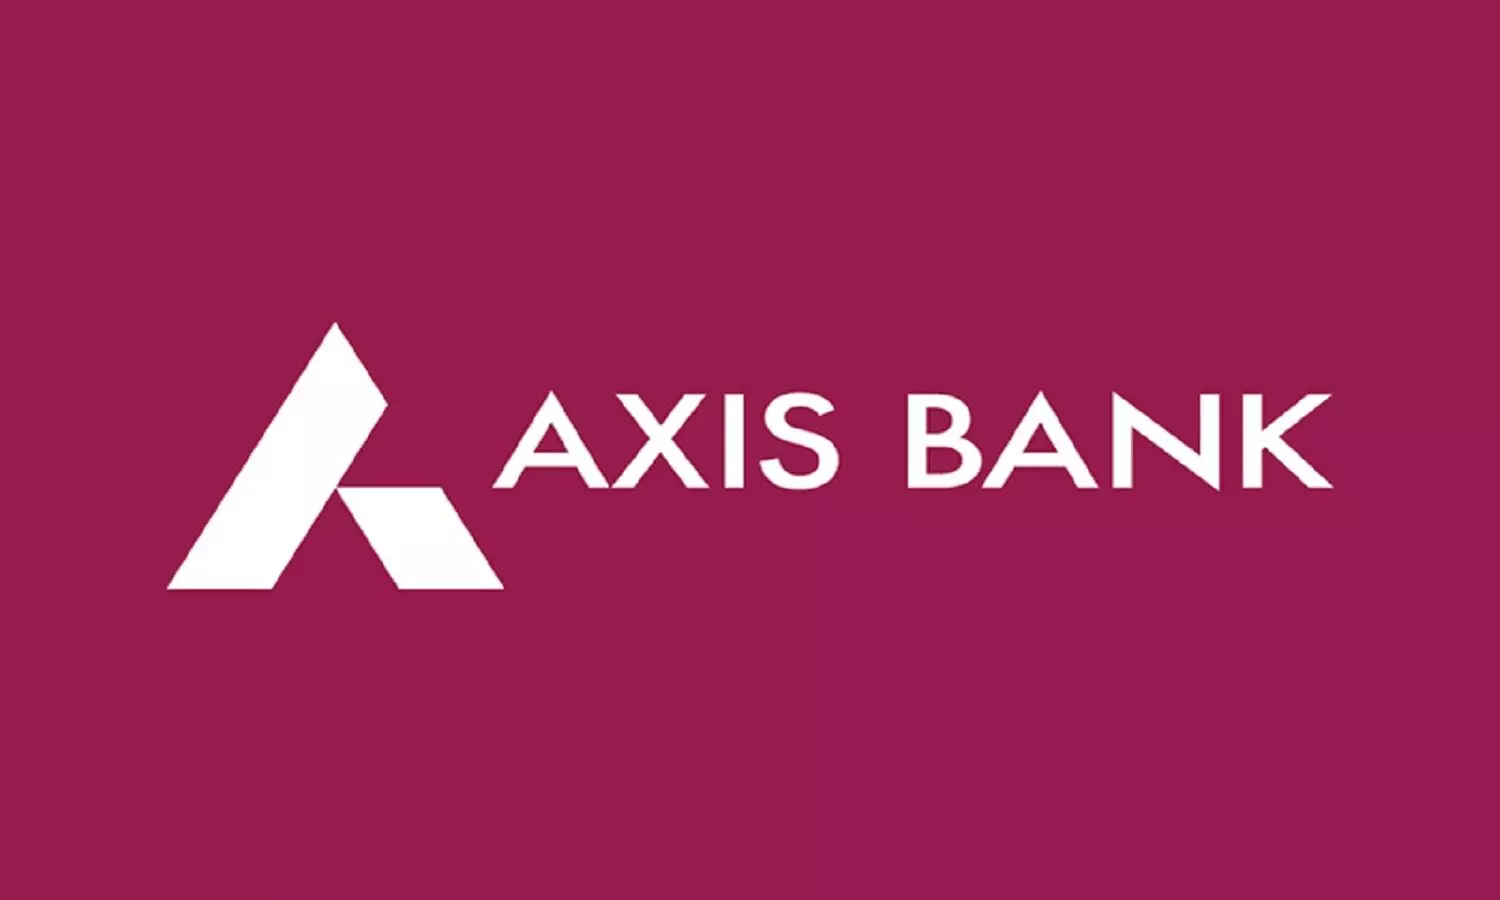 Axis Bank से Loan लेना पड़ेगा महंगा! बैंक ने बढ़ाई EMI